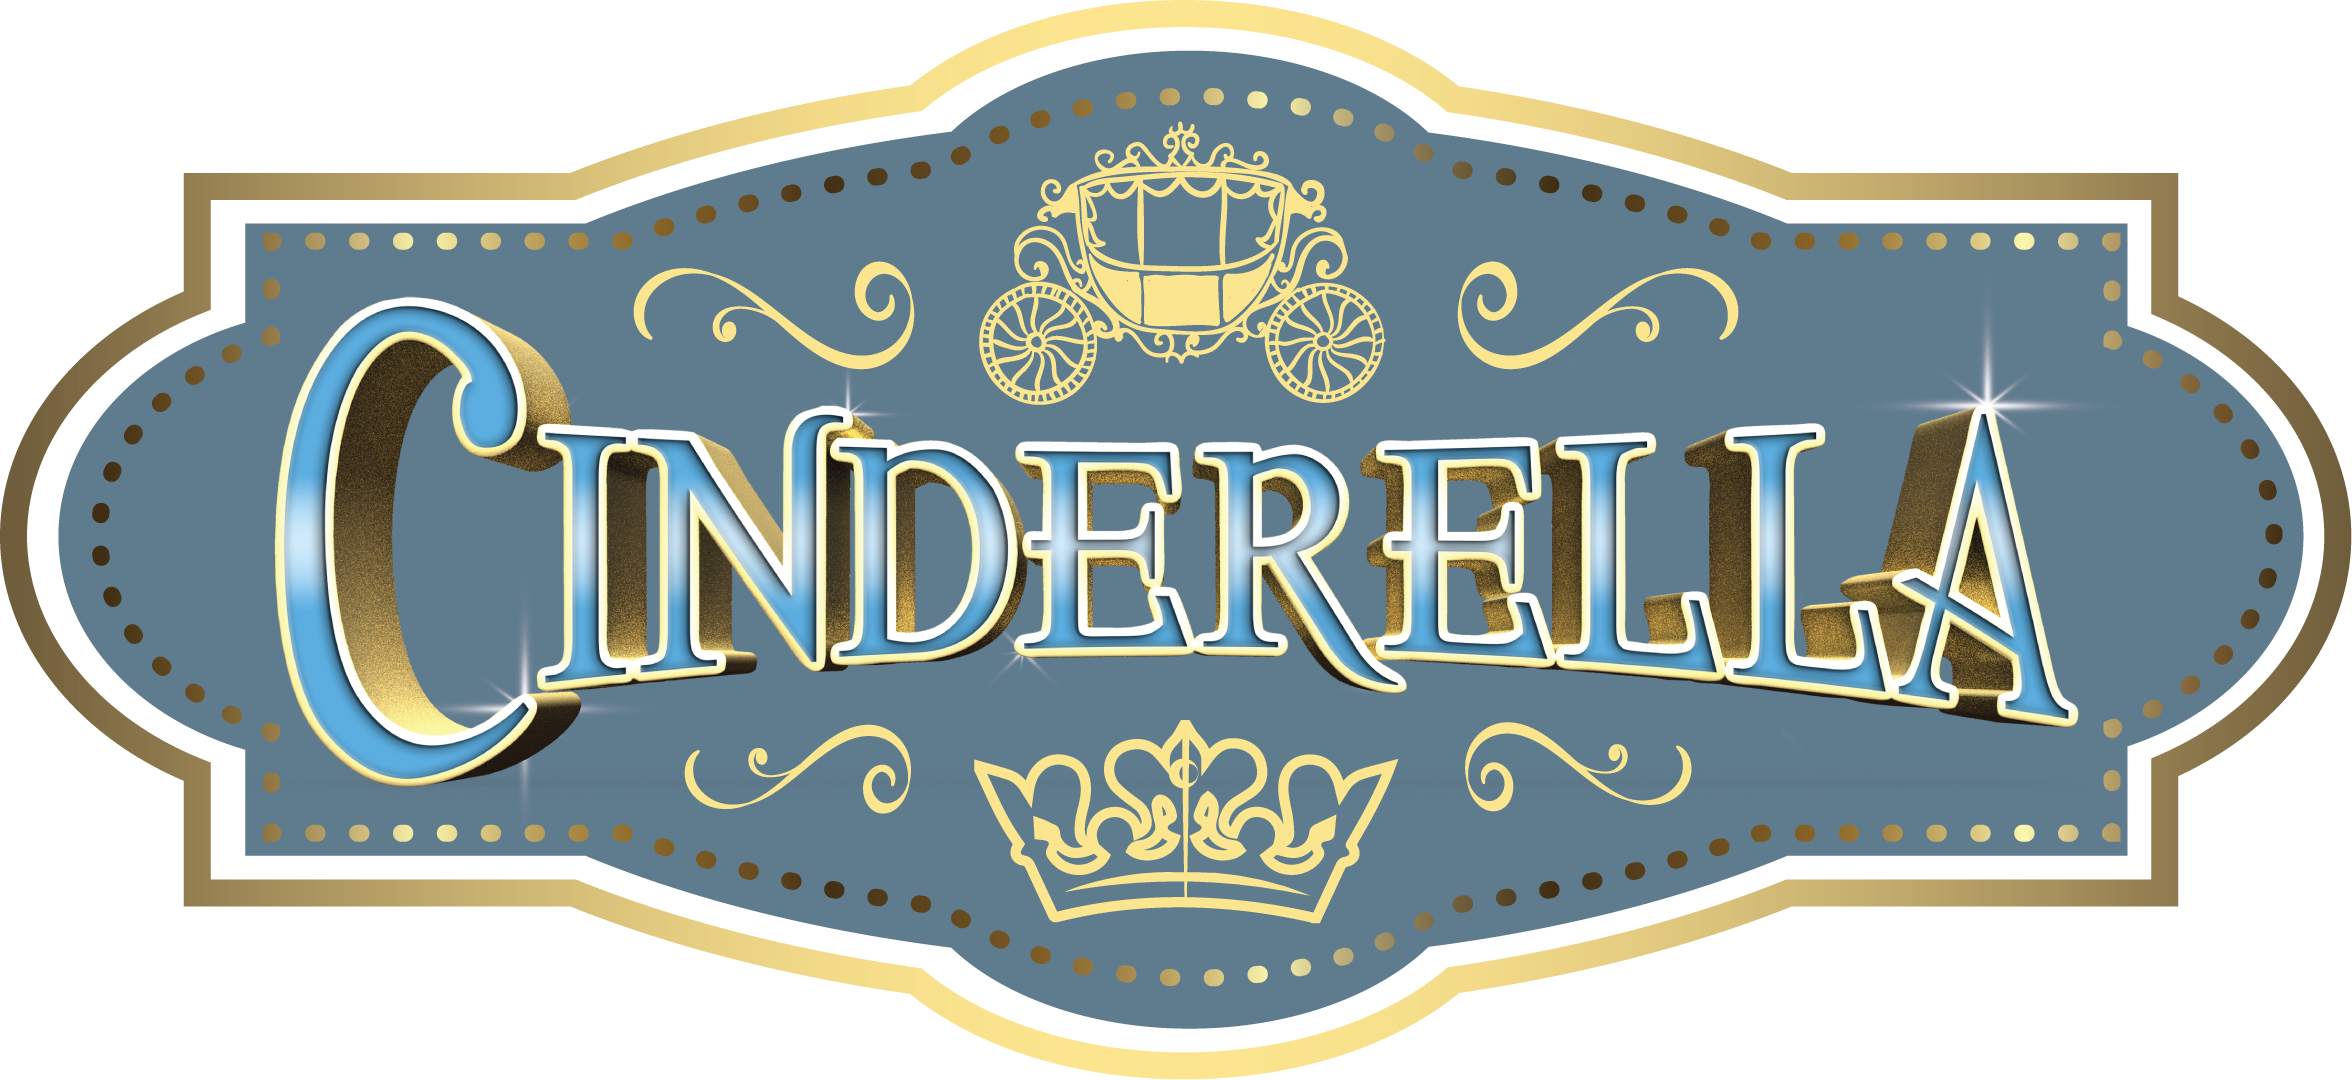 Cinderella Png Hd - Cinderella Png (2352x1080), Png Download